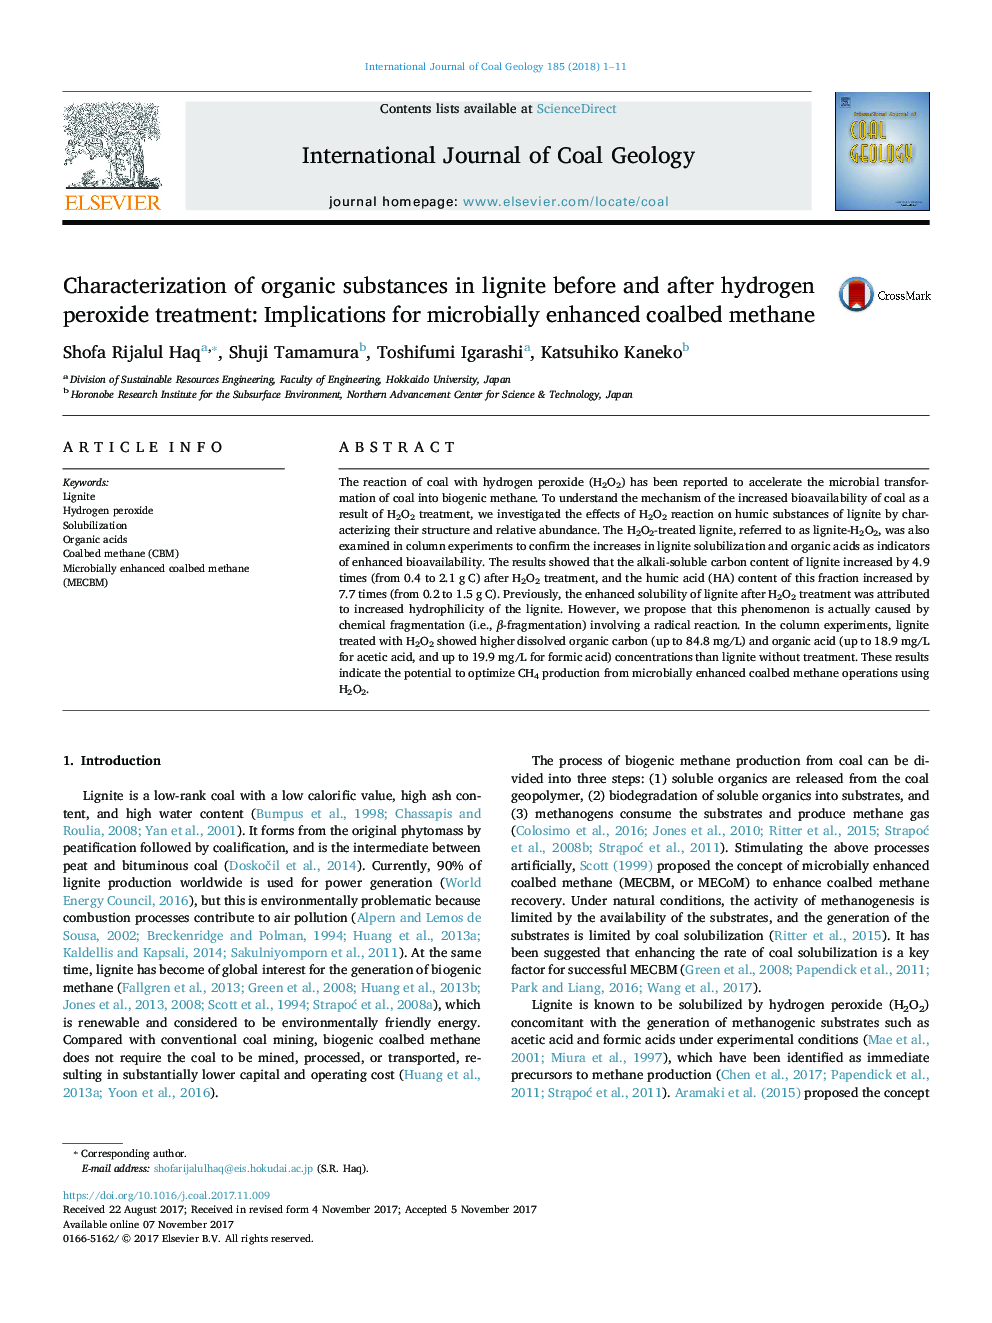 تشخیص مواد آلی در لیگنیت قبل و بعد از درمان هیدروژن پراکسید: پیامدهایی برای متان میکروبی 